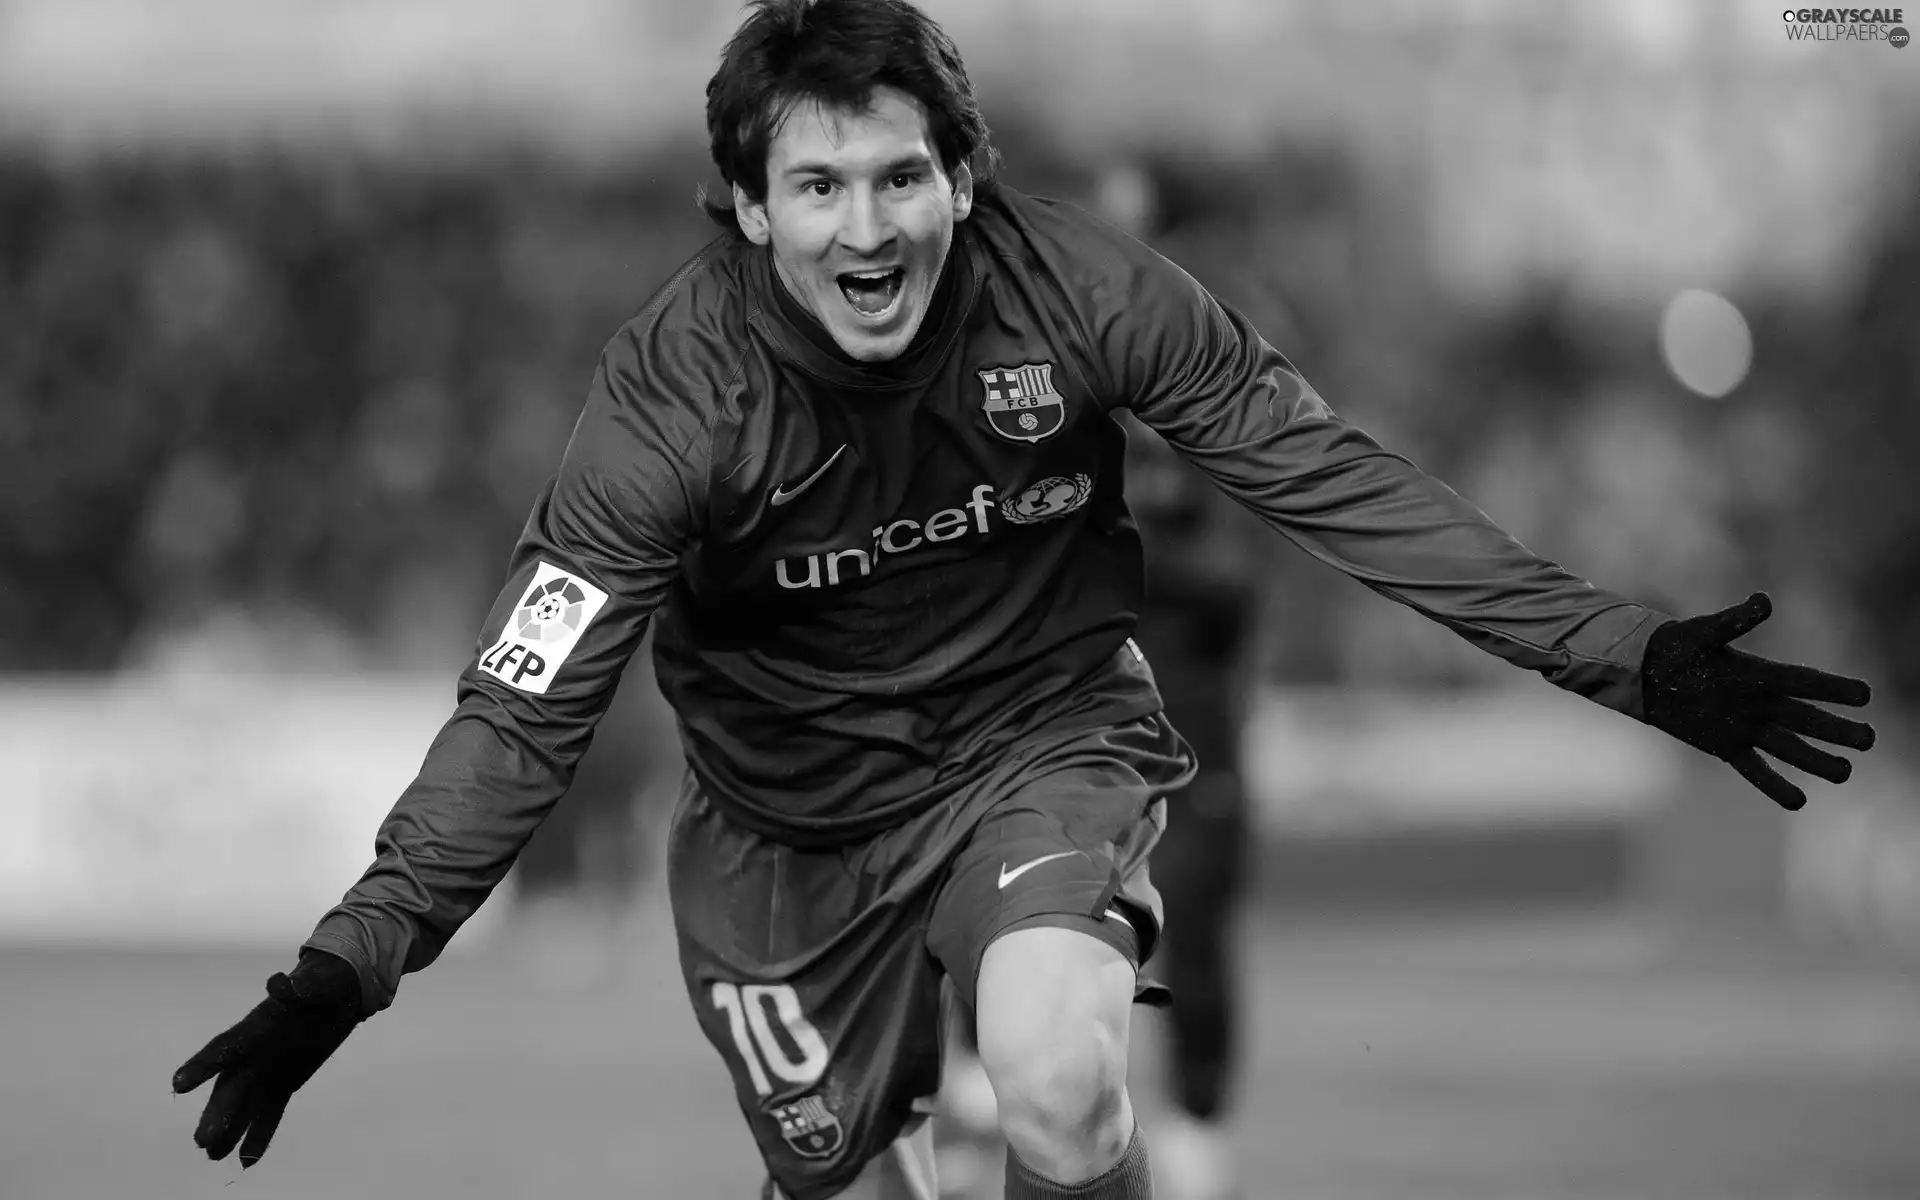 FC Barcelona, Lionel Messi, footballer